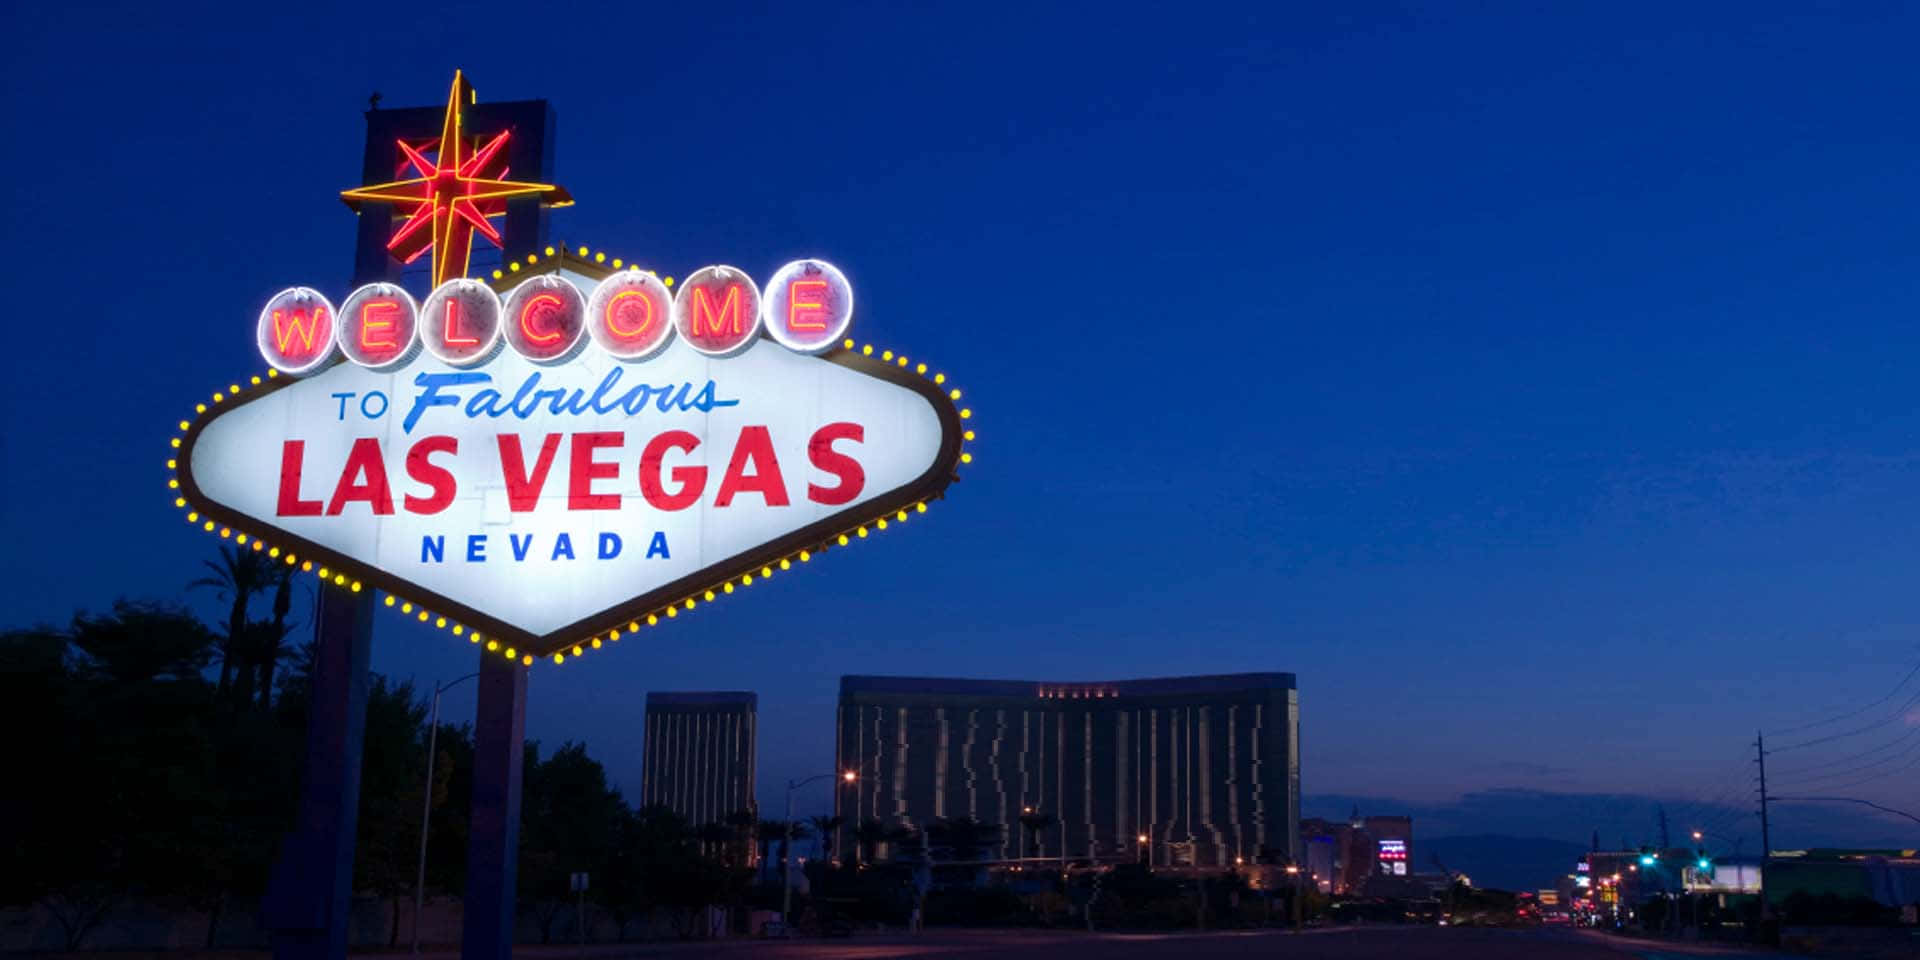 Hintergrundbildvon Las Vegas Bei Nacht In Landschaftsansicht